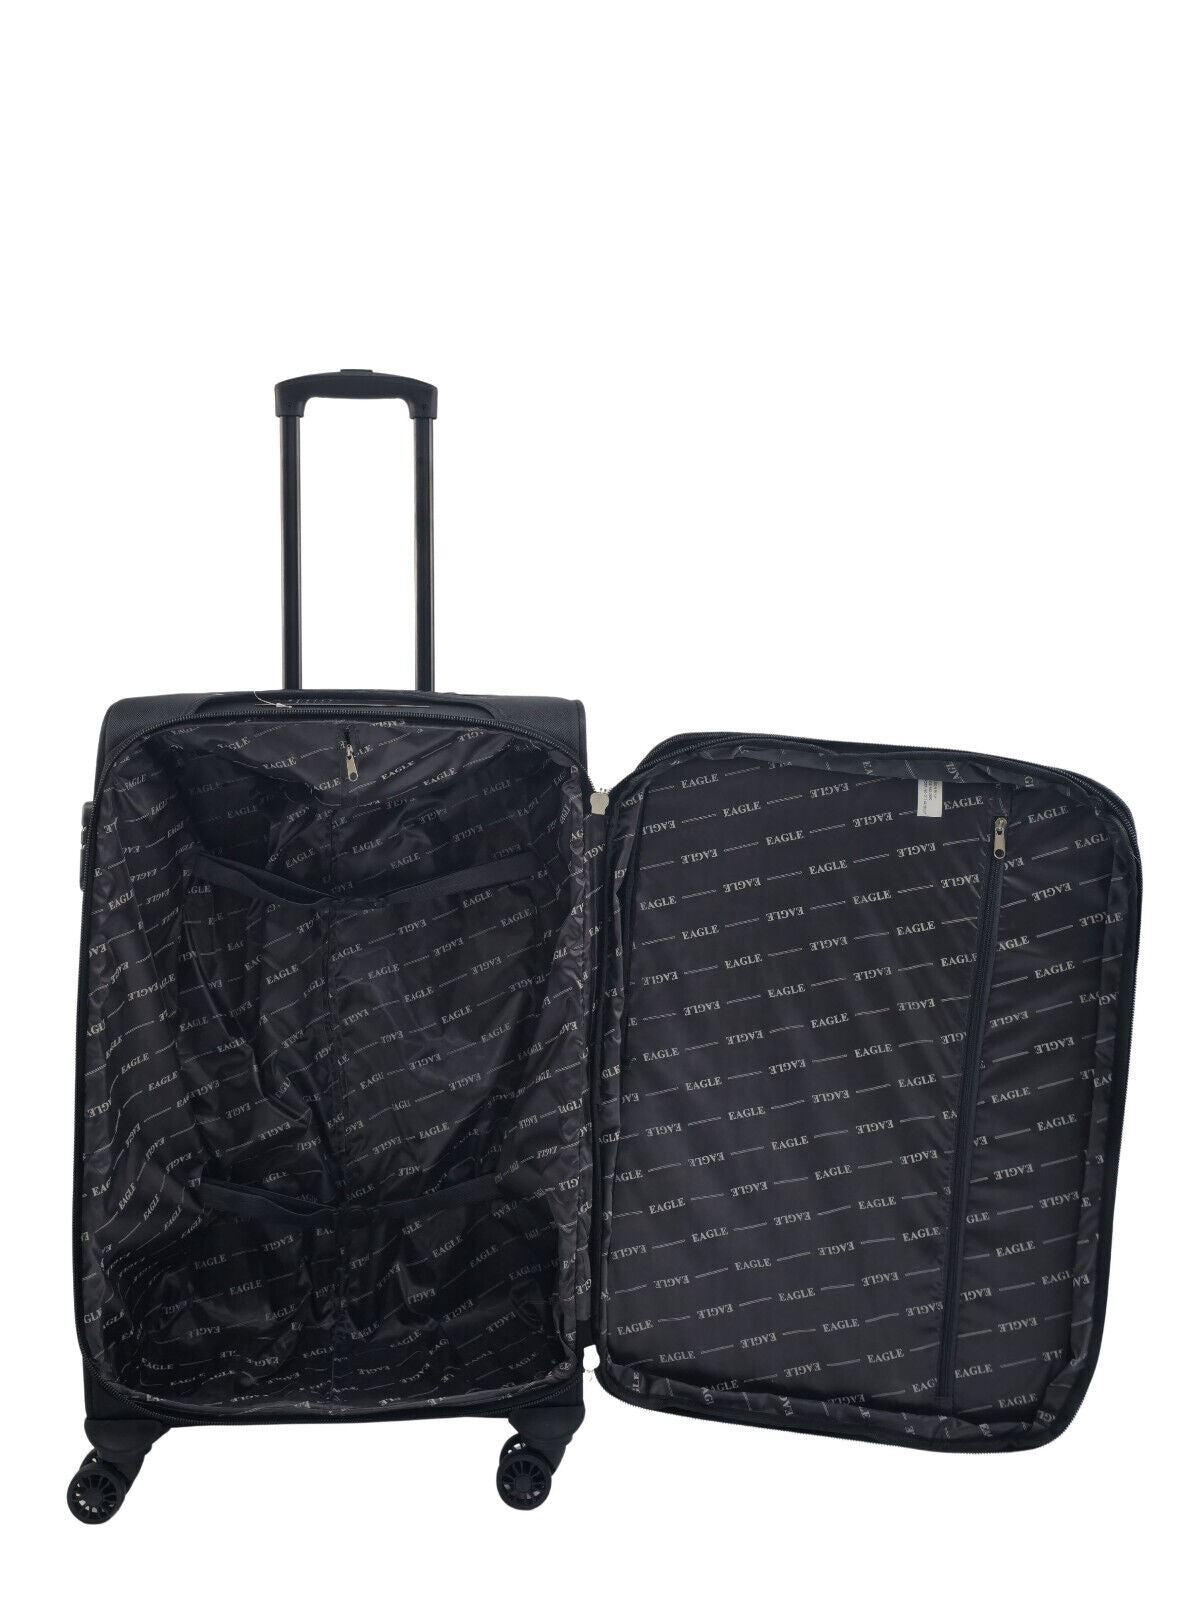 Ashland Medium Soft Shell Suitcase in Black